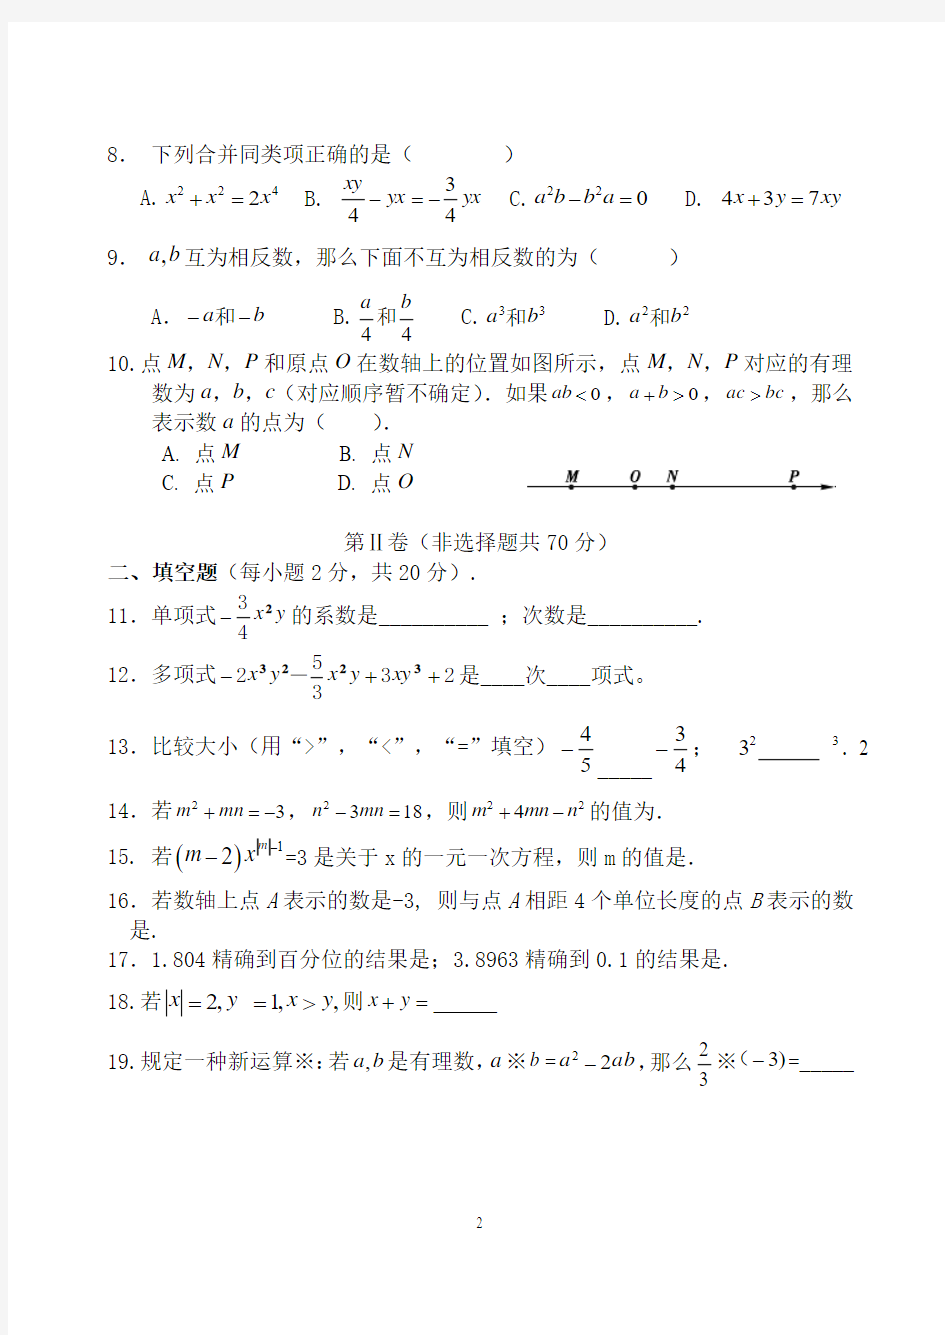 2016-2017学年北京市第156中学初一第一学期中数学试卷(含答案)